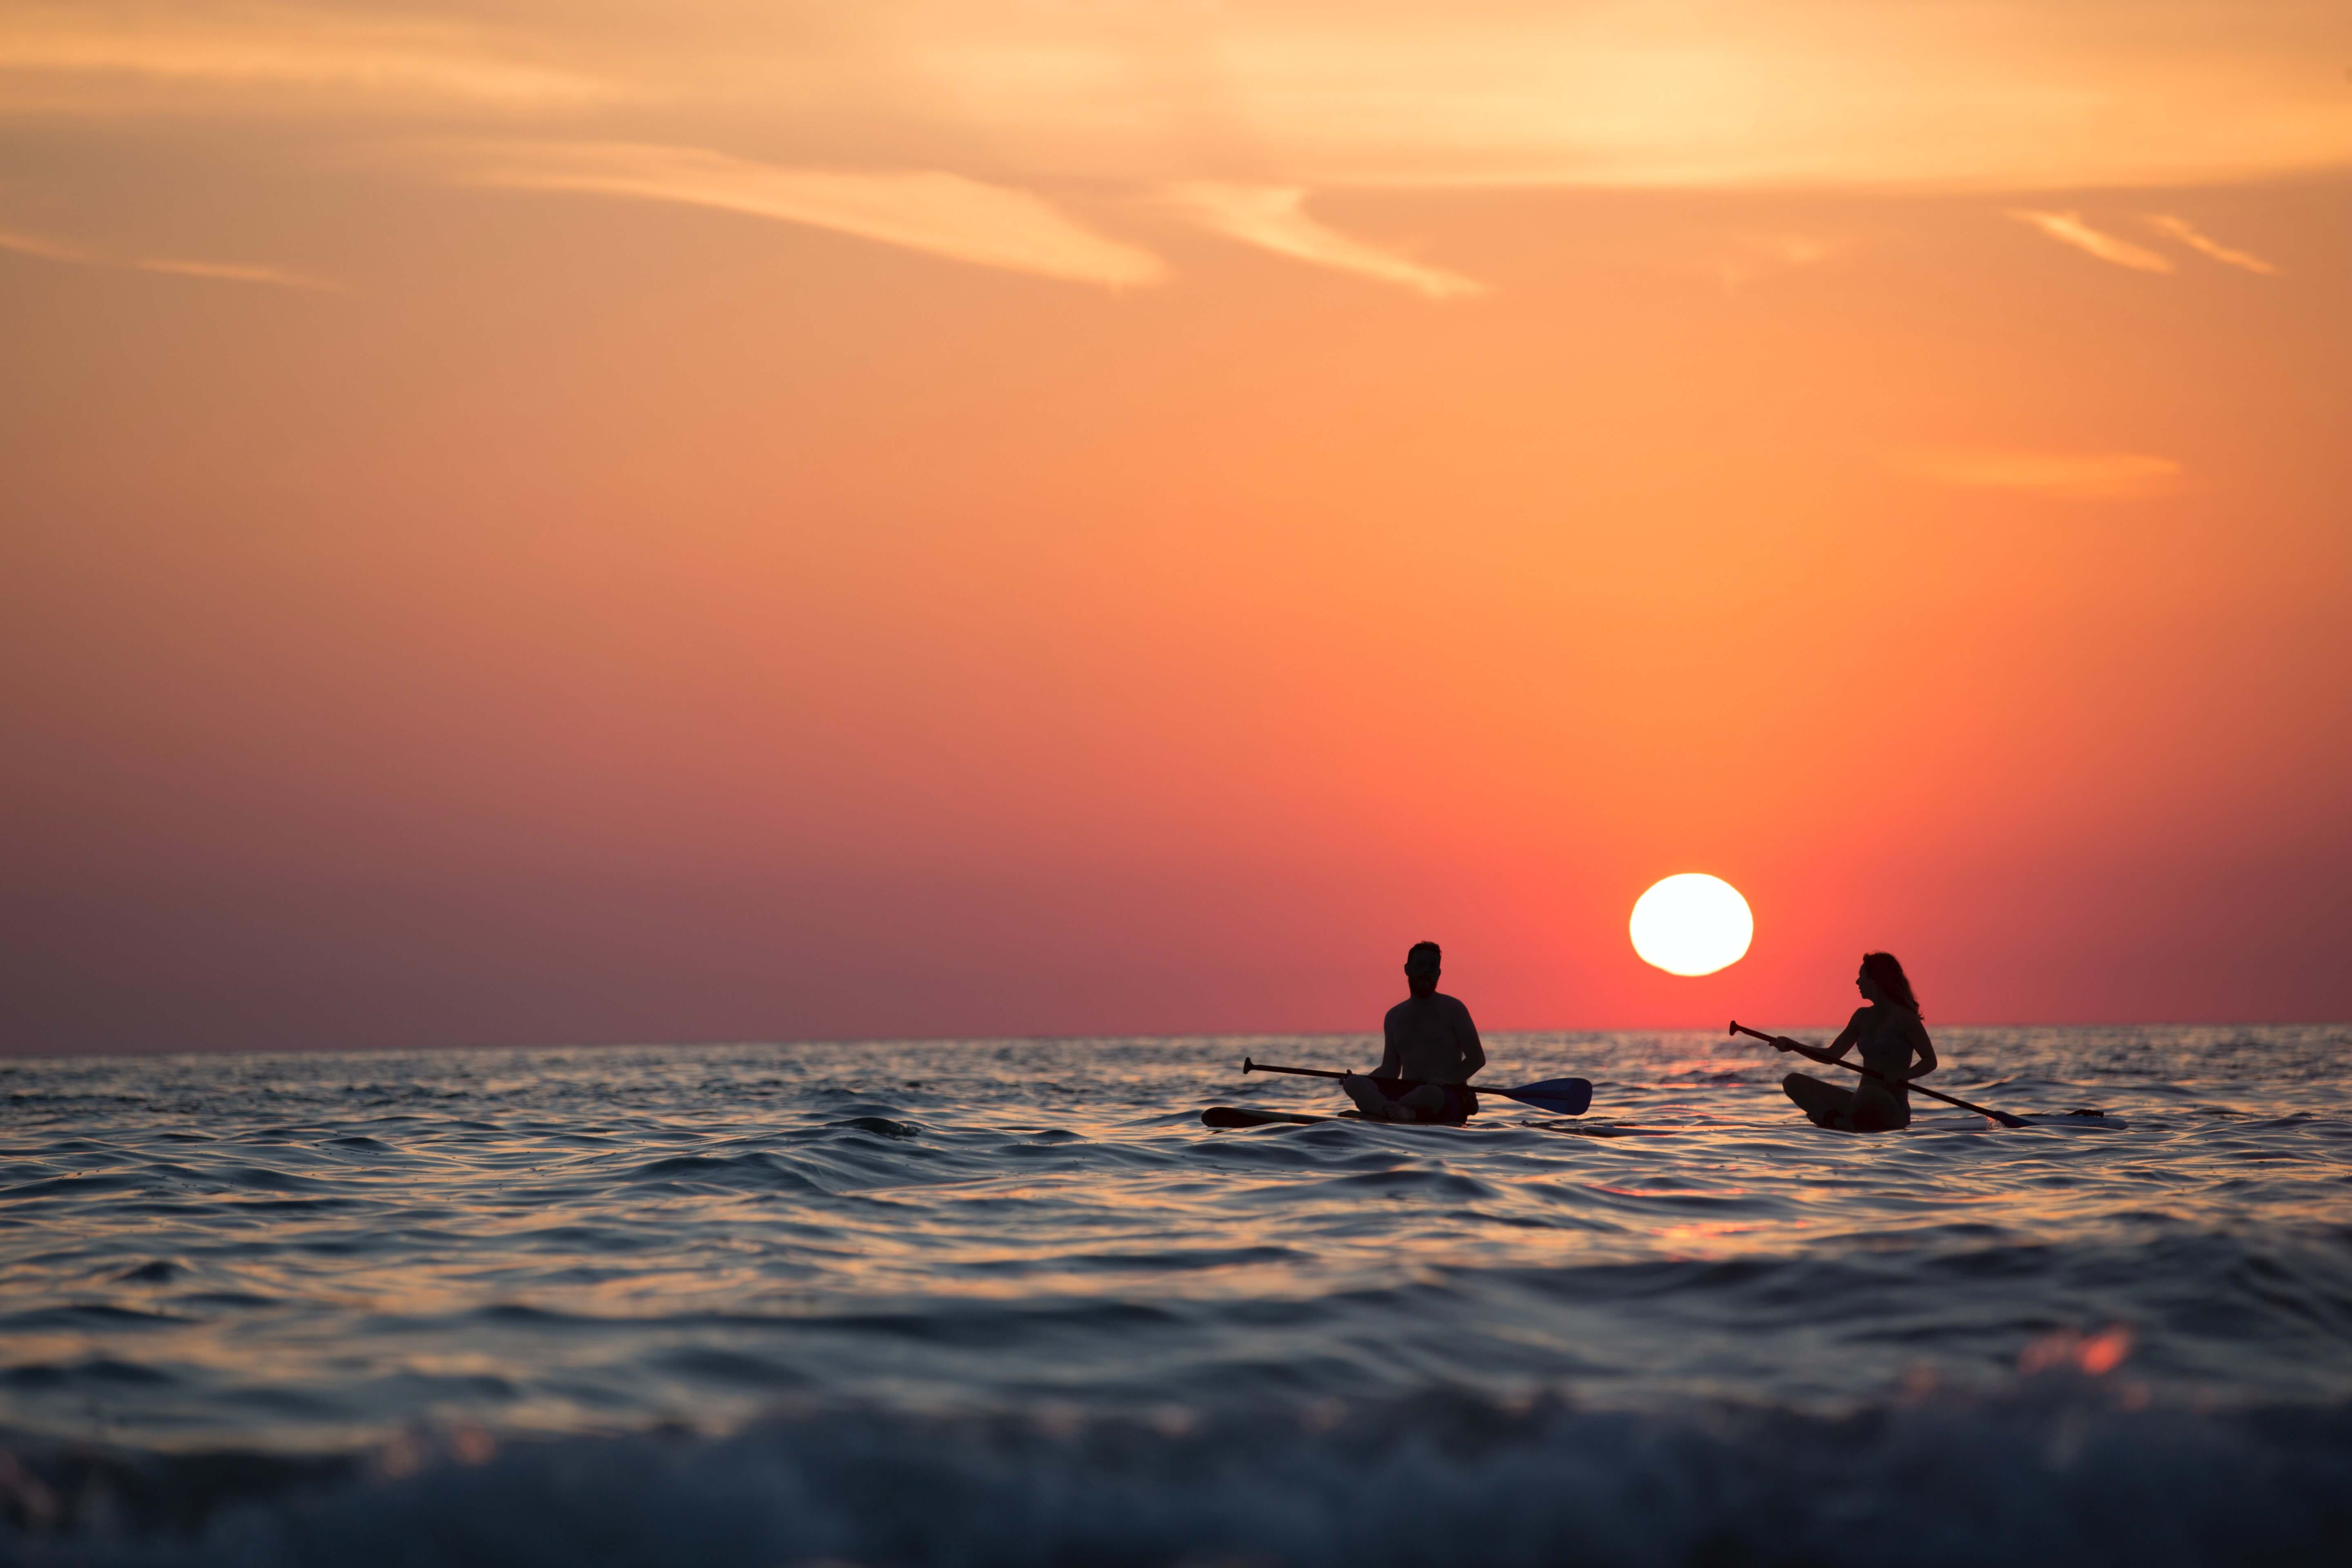 kayak kayaking during sunset on ocean sea